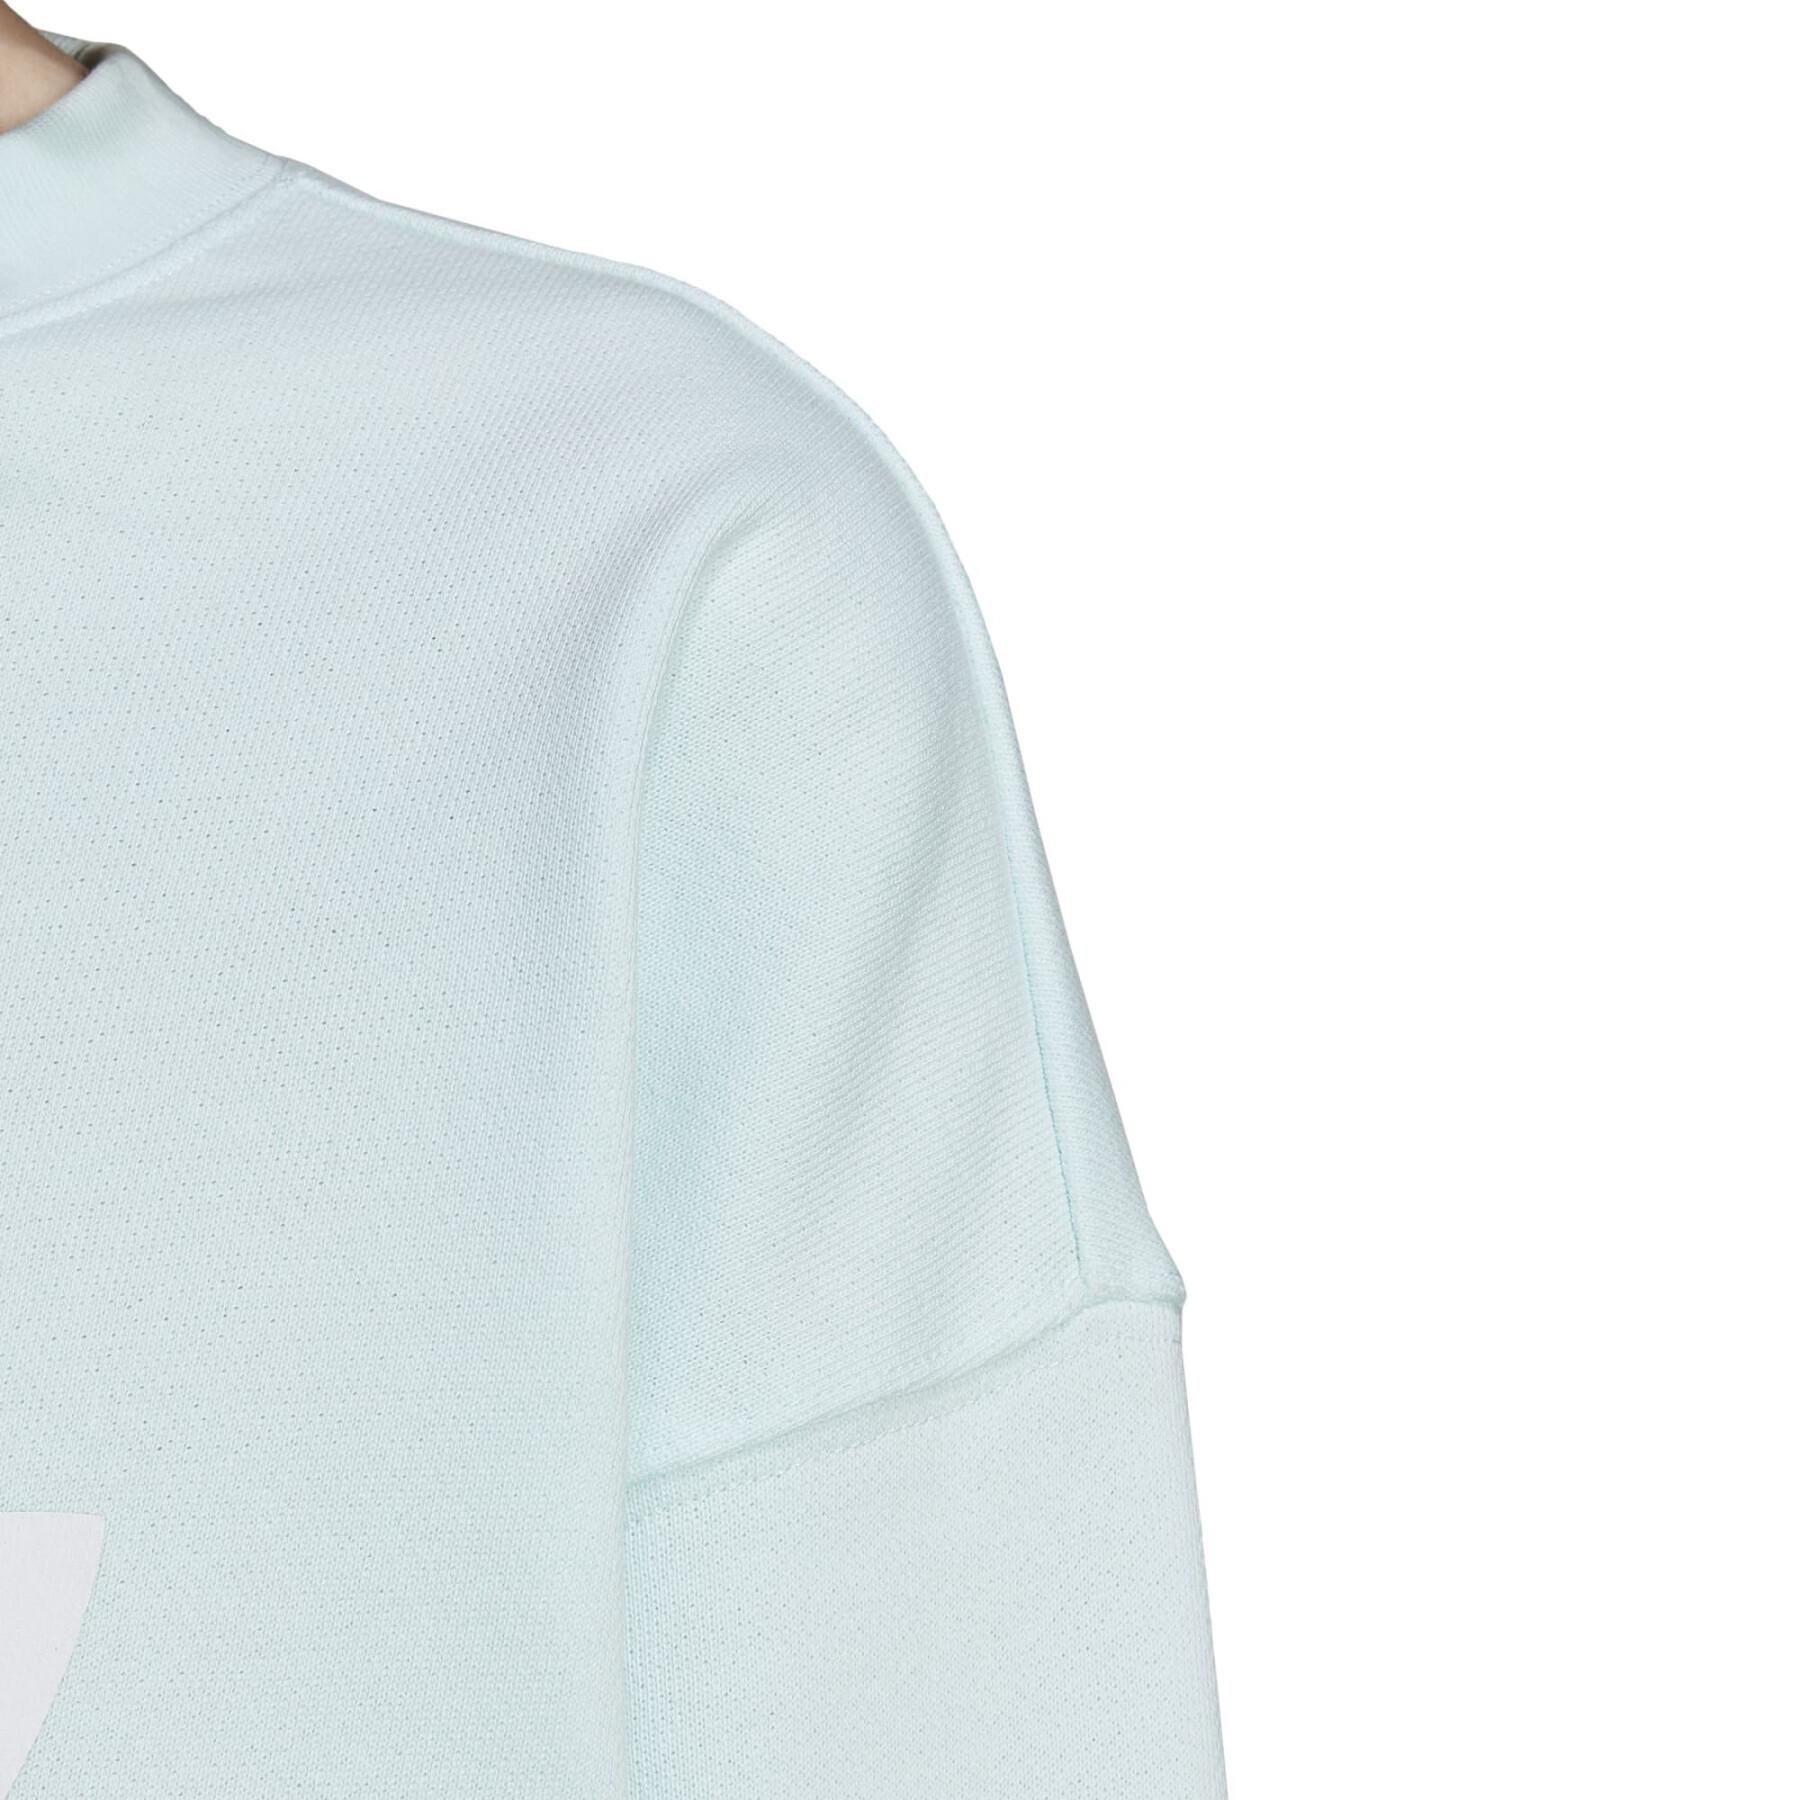 Women's crew neck sweatshirt adidas Originals Trefoil